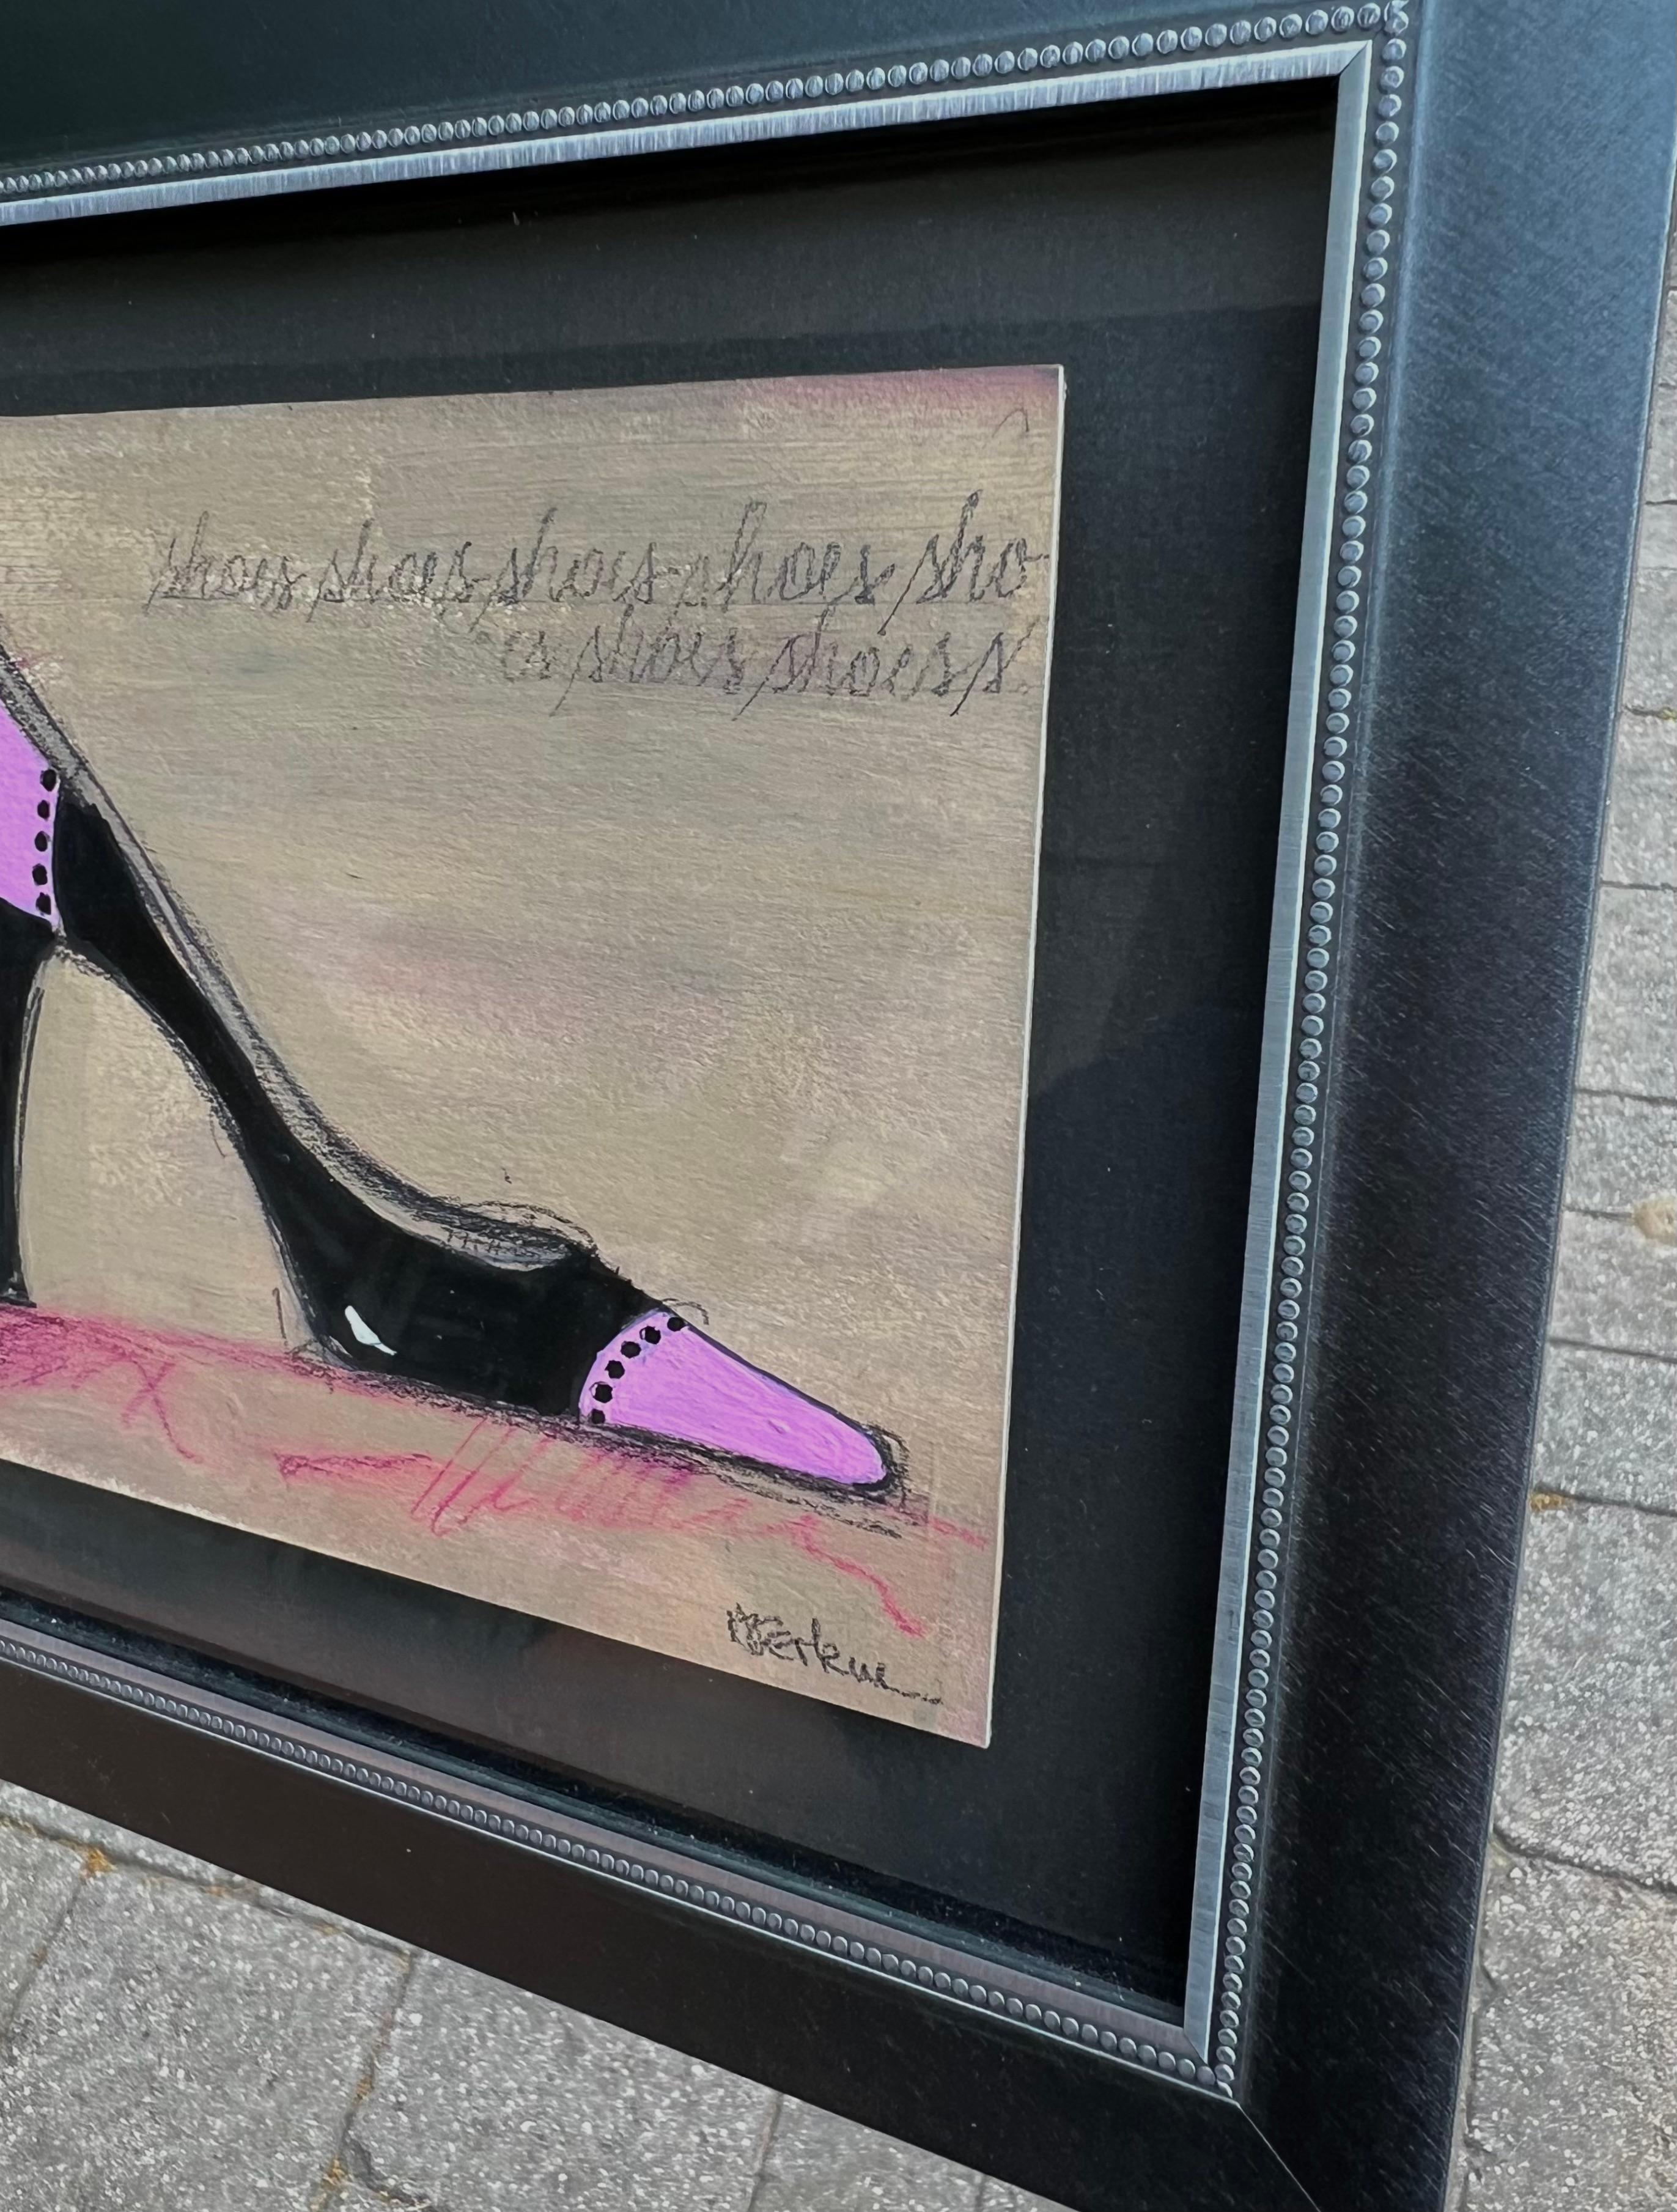 I Love Shoes - 1 - (8.25”x9.25”, Framed Black And Pink Shoe, Original Artwork) For Sale 7